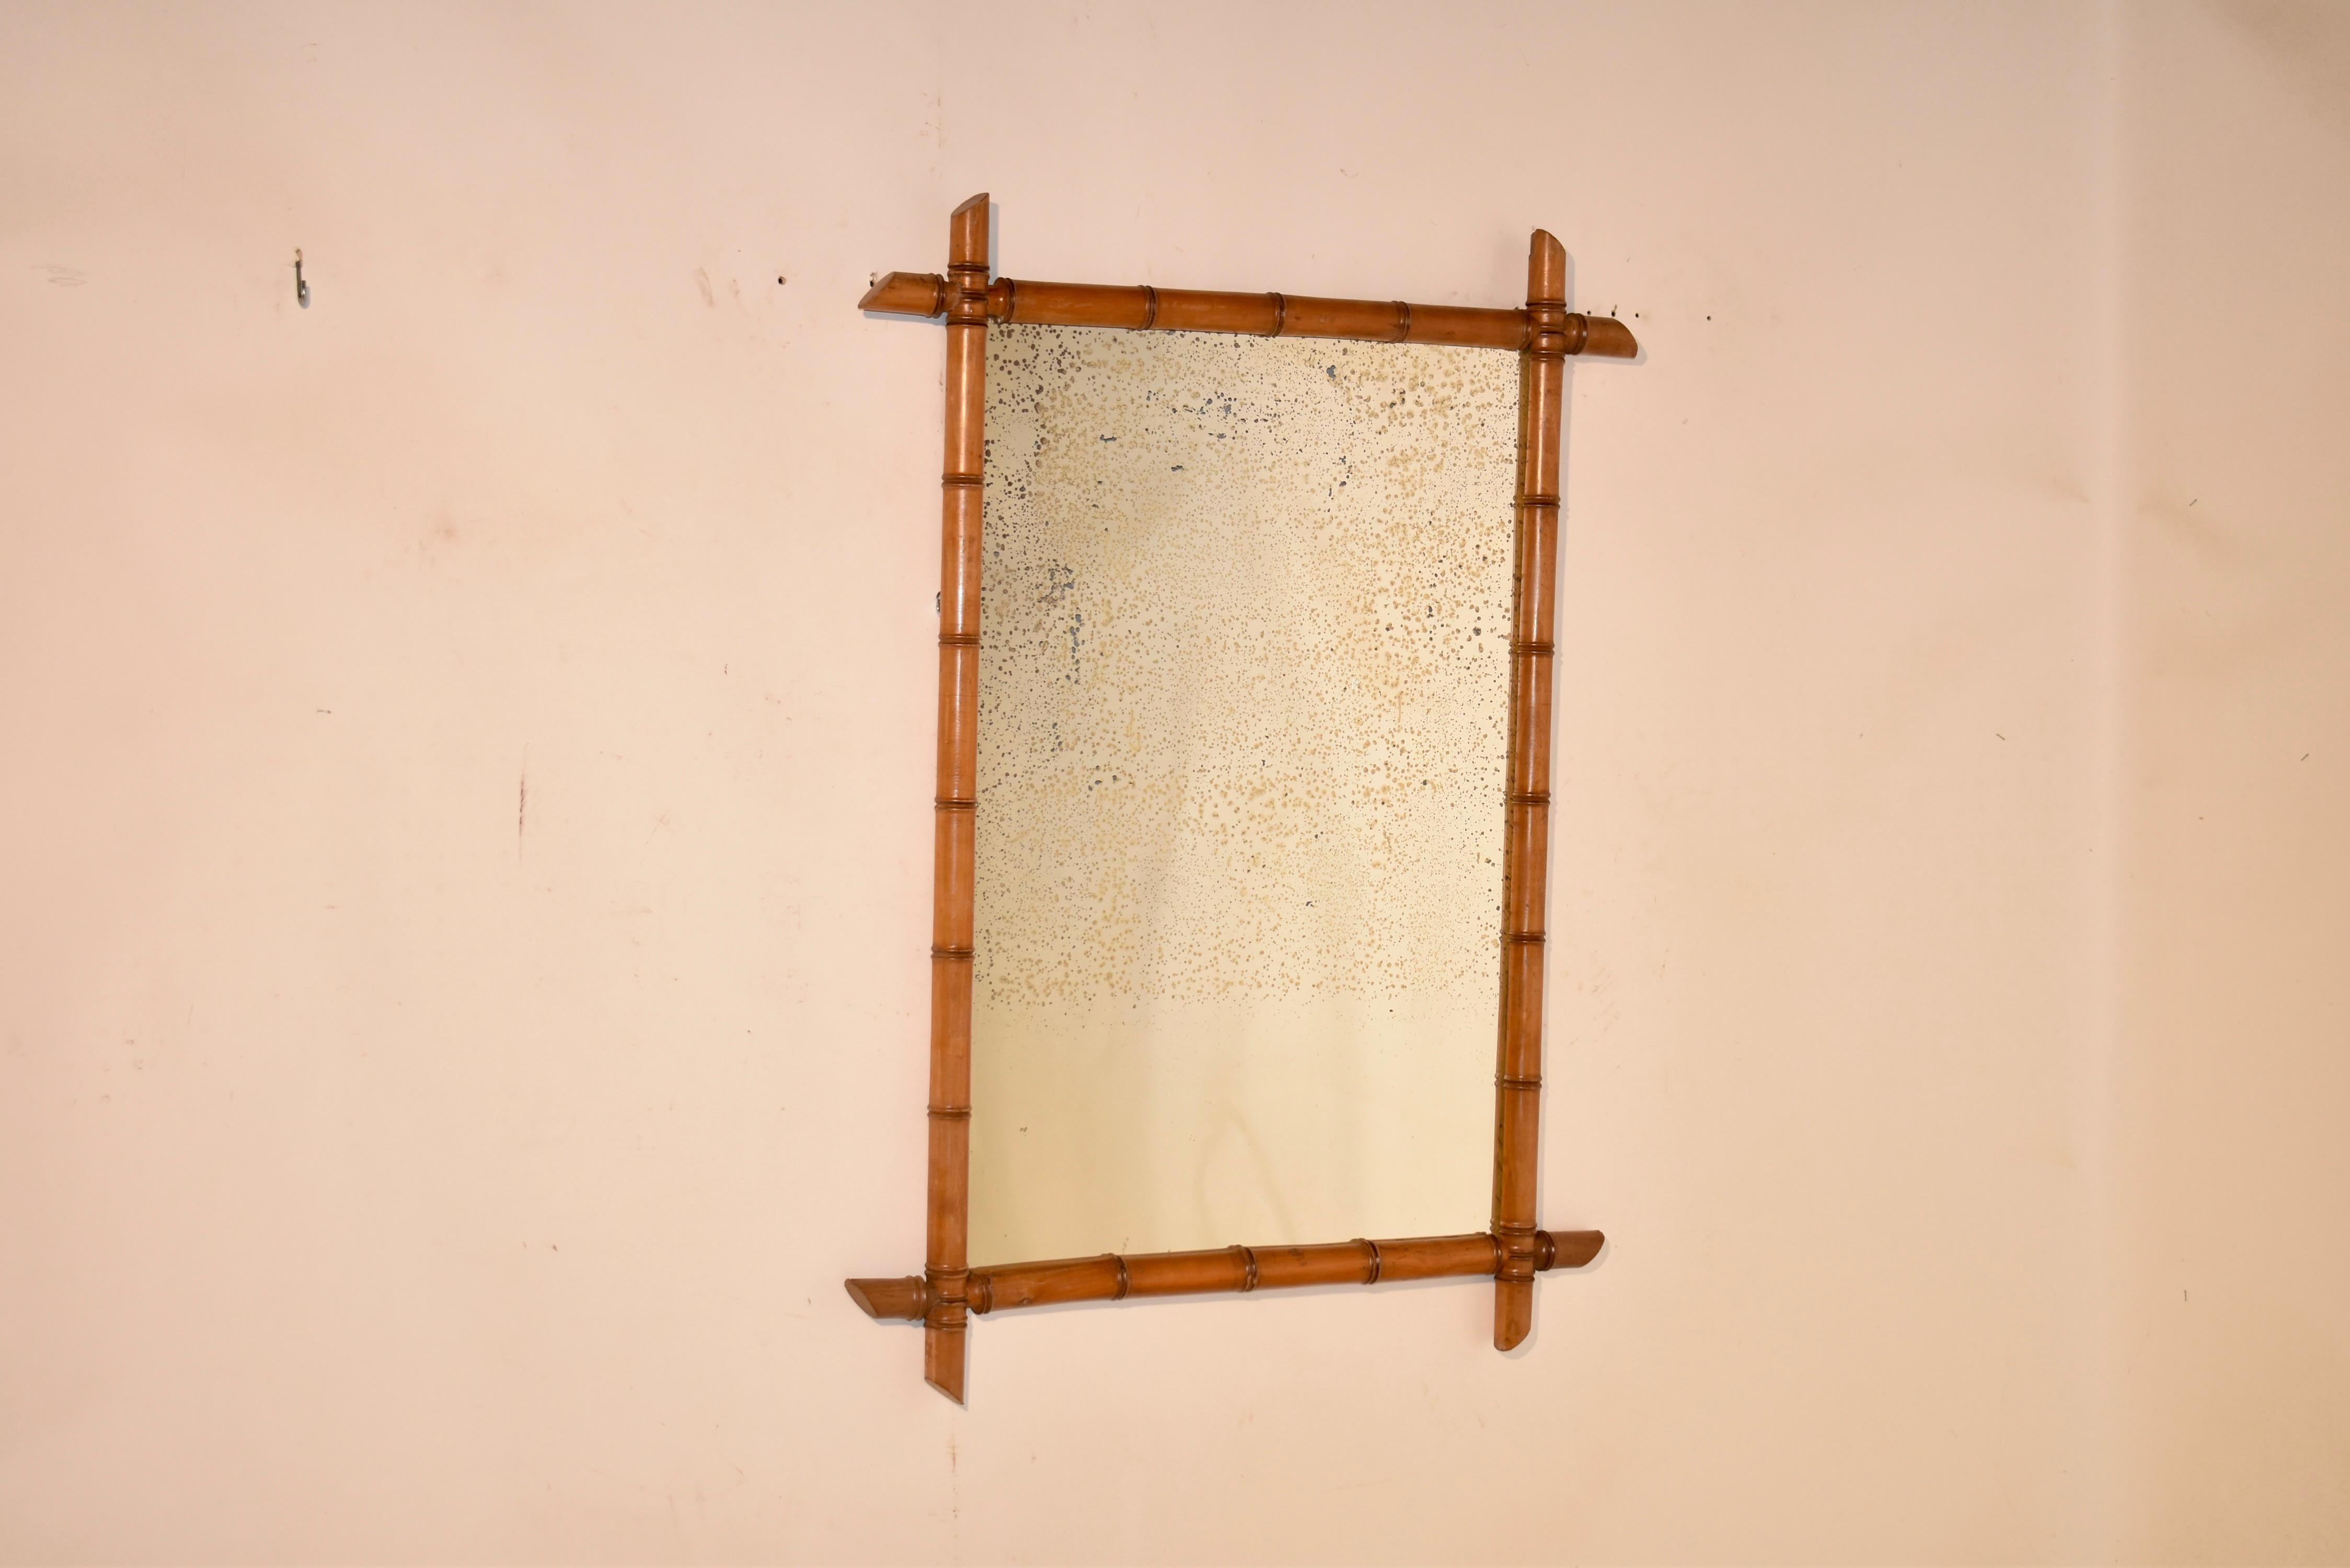 Miroir en faux bambou du 19ème siècle provenant de France.  Le cadre a été merveilleusement tourné à la main à partir de cerisier pour ressembler à du bambou.  Le cadre entoure ce qui semble être le miroir d'origine en verre au mercure.  Ces miroirs